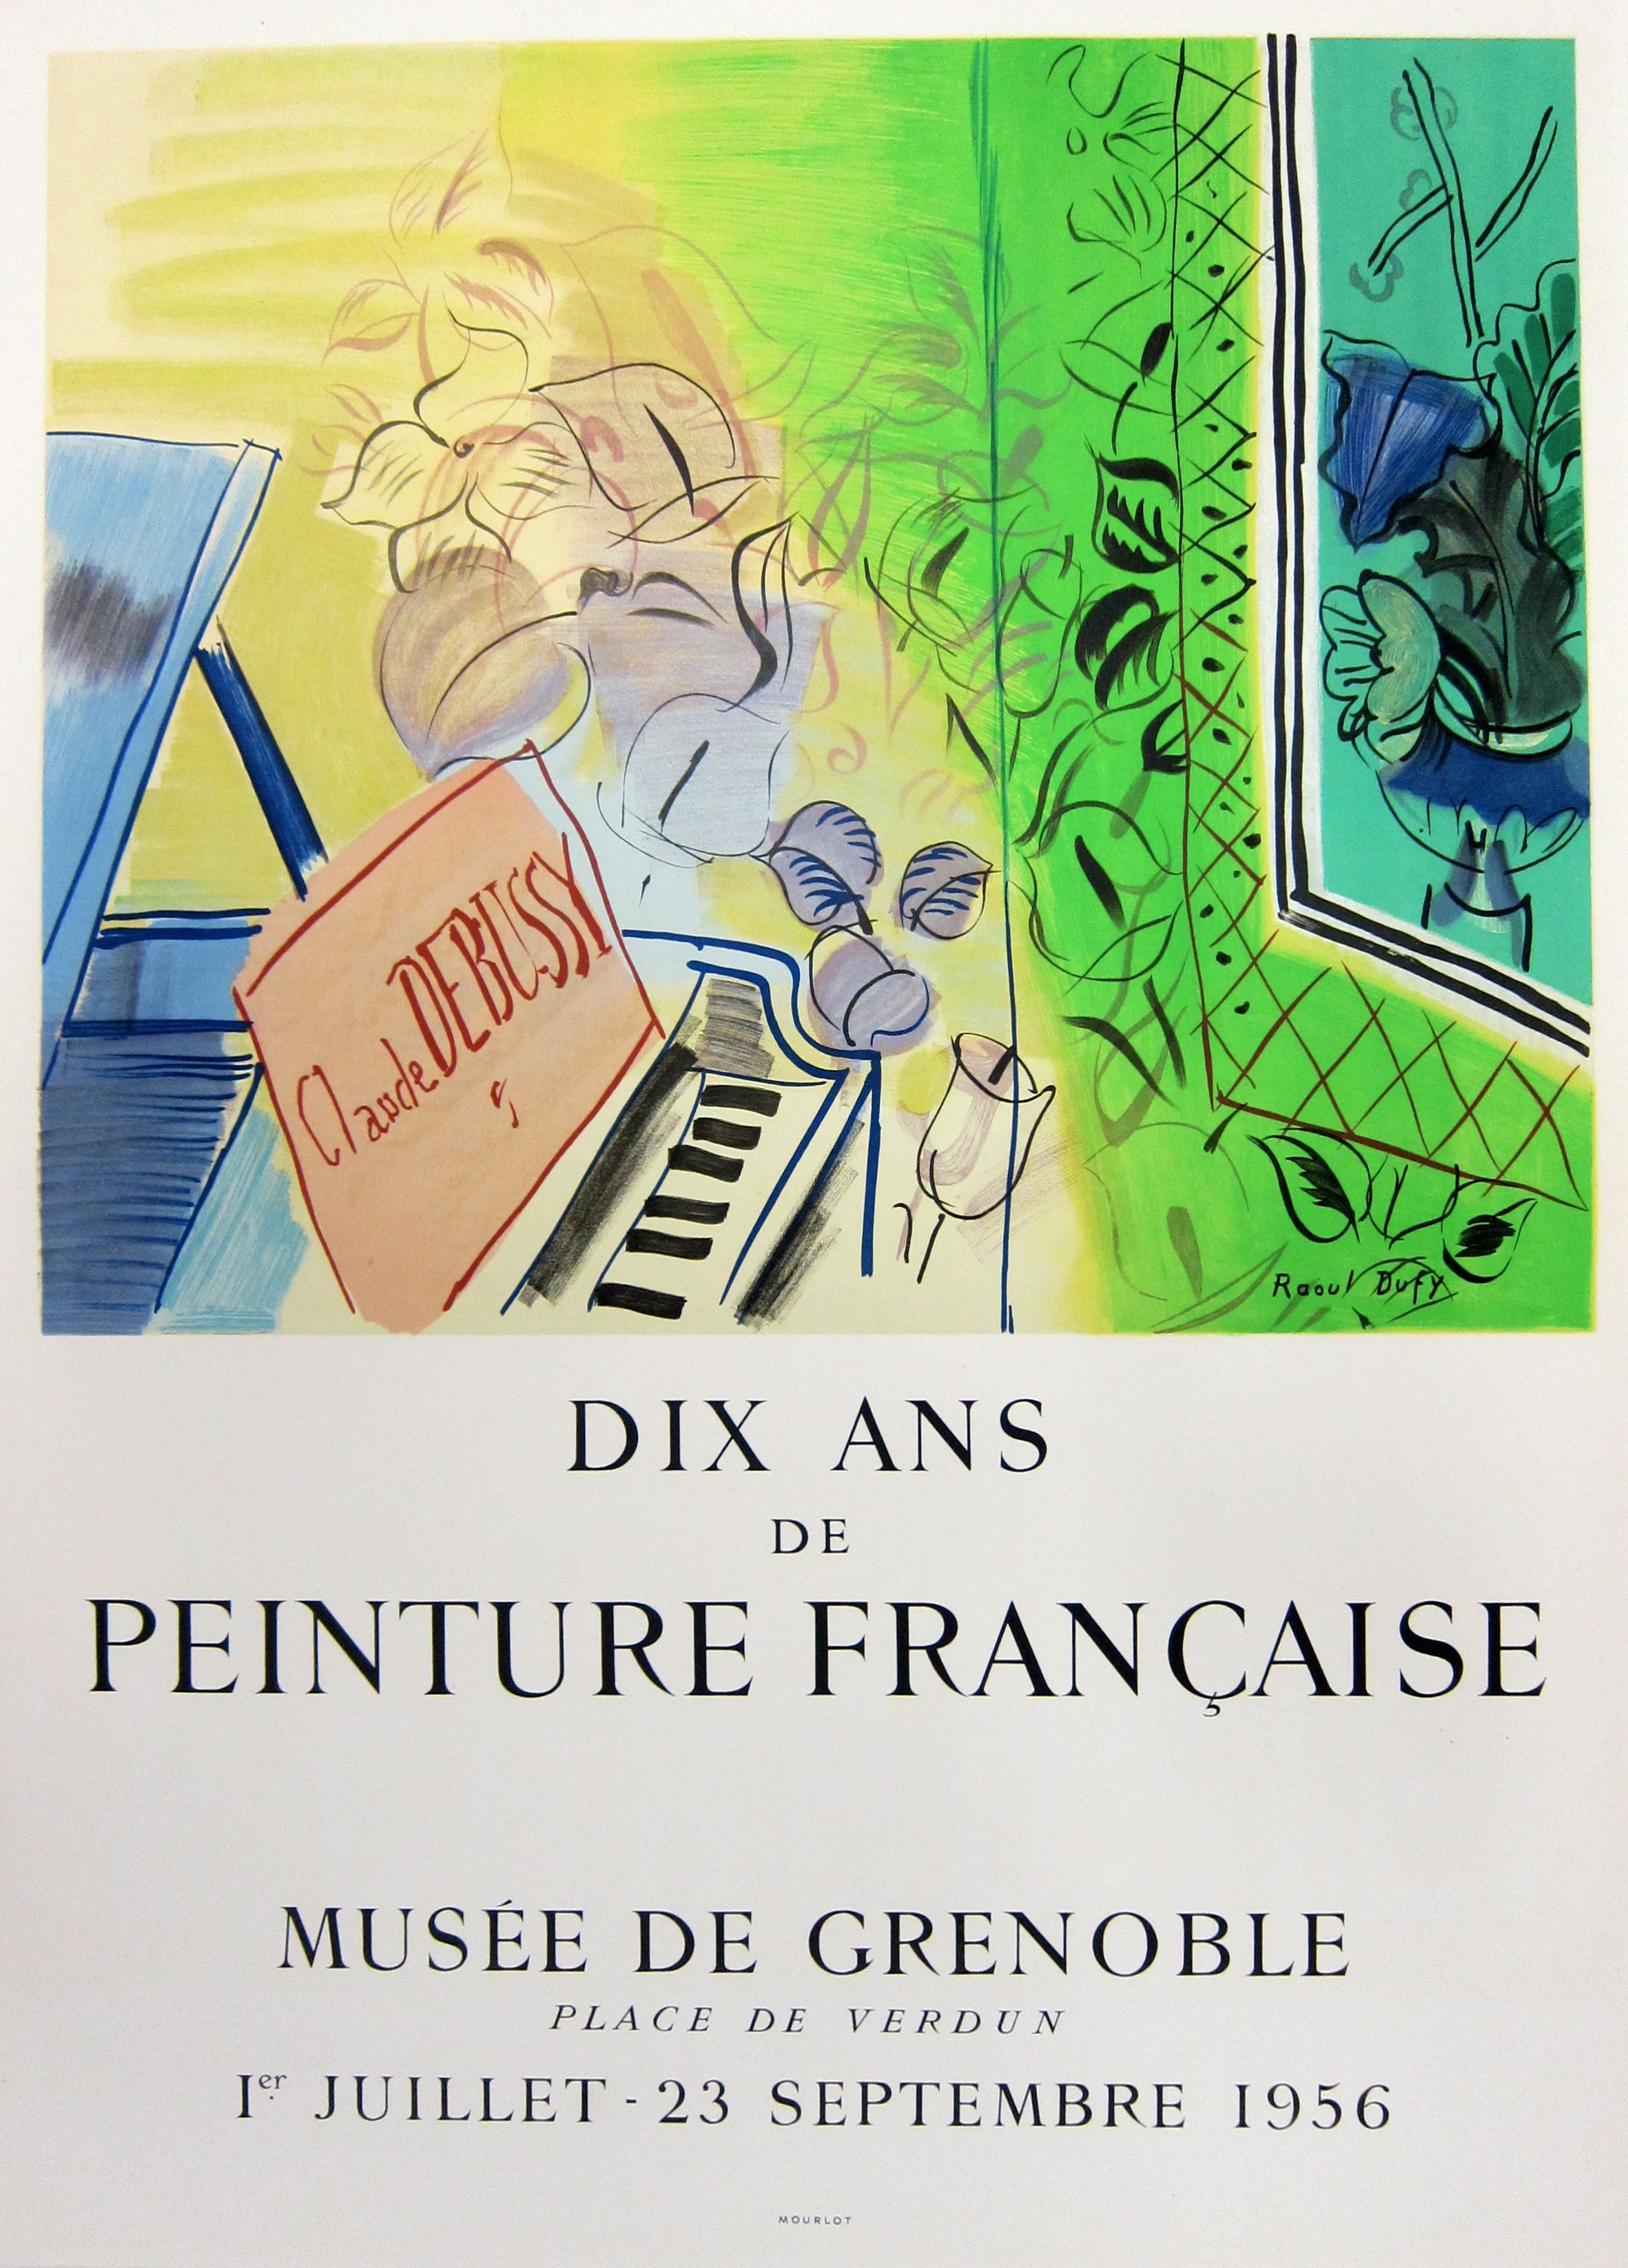 Dieses lithografische Plakat wurde 1966 nach dem verstorbenen Künstler Raoul Dufy für eine Ausstellung mit Werken von Chagall, Dufy, Braque, Matisse und anderen französischen Künstlern im French Institute of Scotland in Edinburg entworfen. Dieses